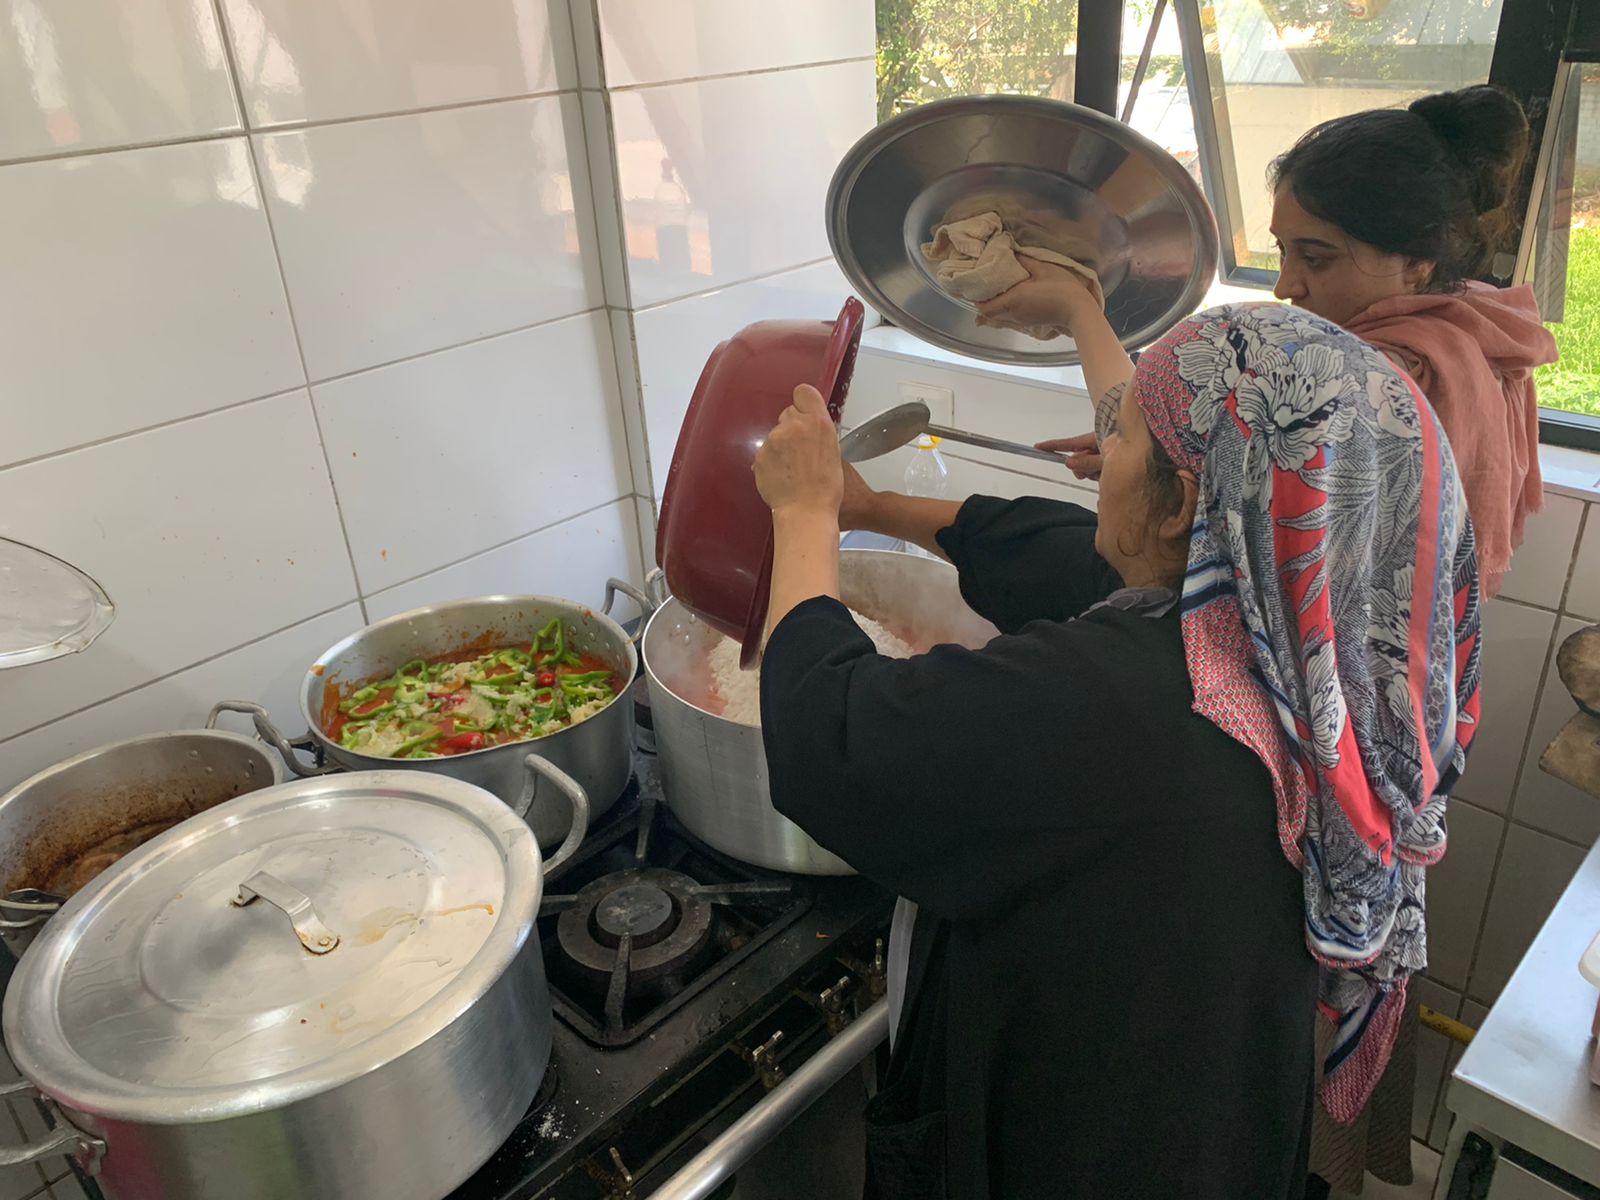 Duas mulheres afegãs estão rente ao fogão preparando a comida. Estão misturando diferentes ingredientes em uma grande panela. Usam lenços, para cobrir seus cabelos. 